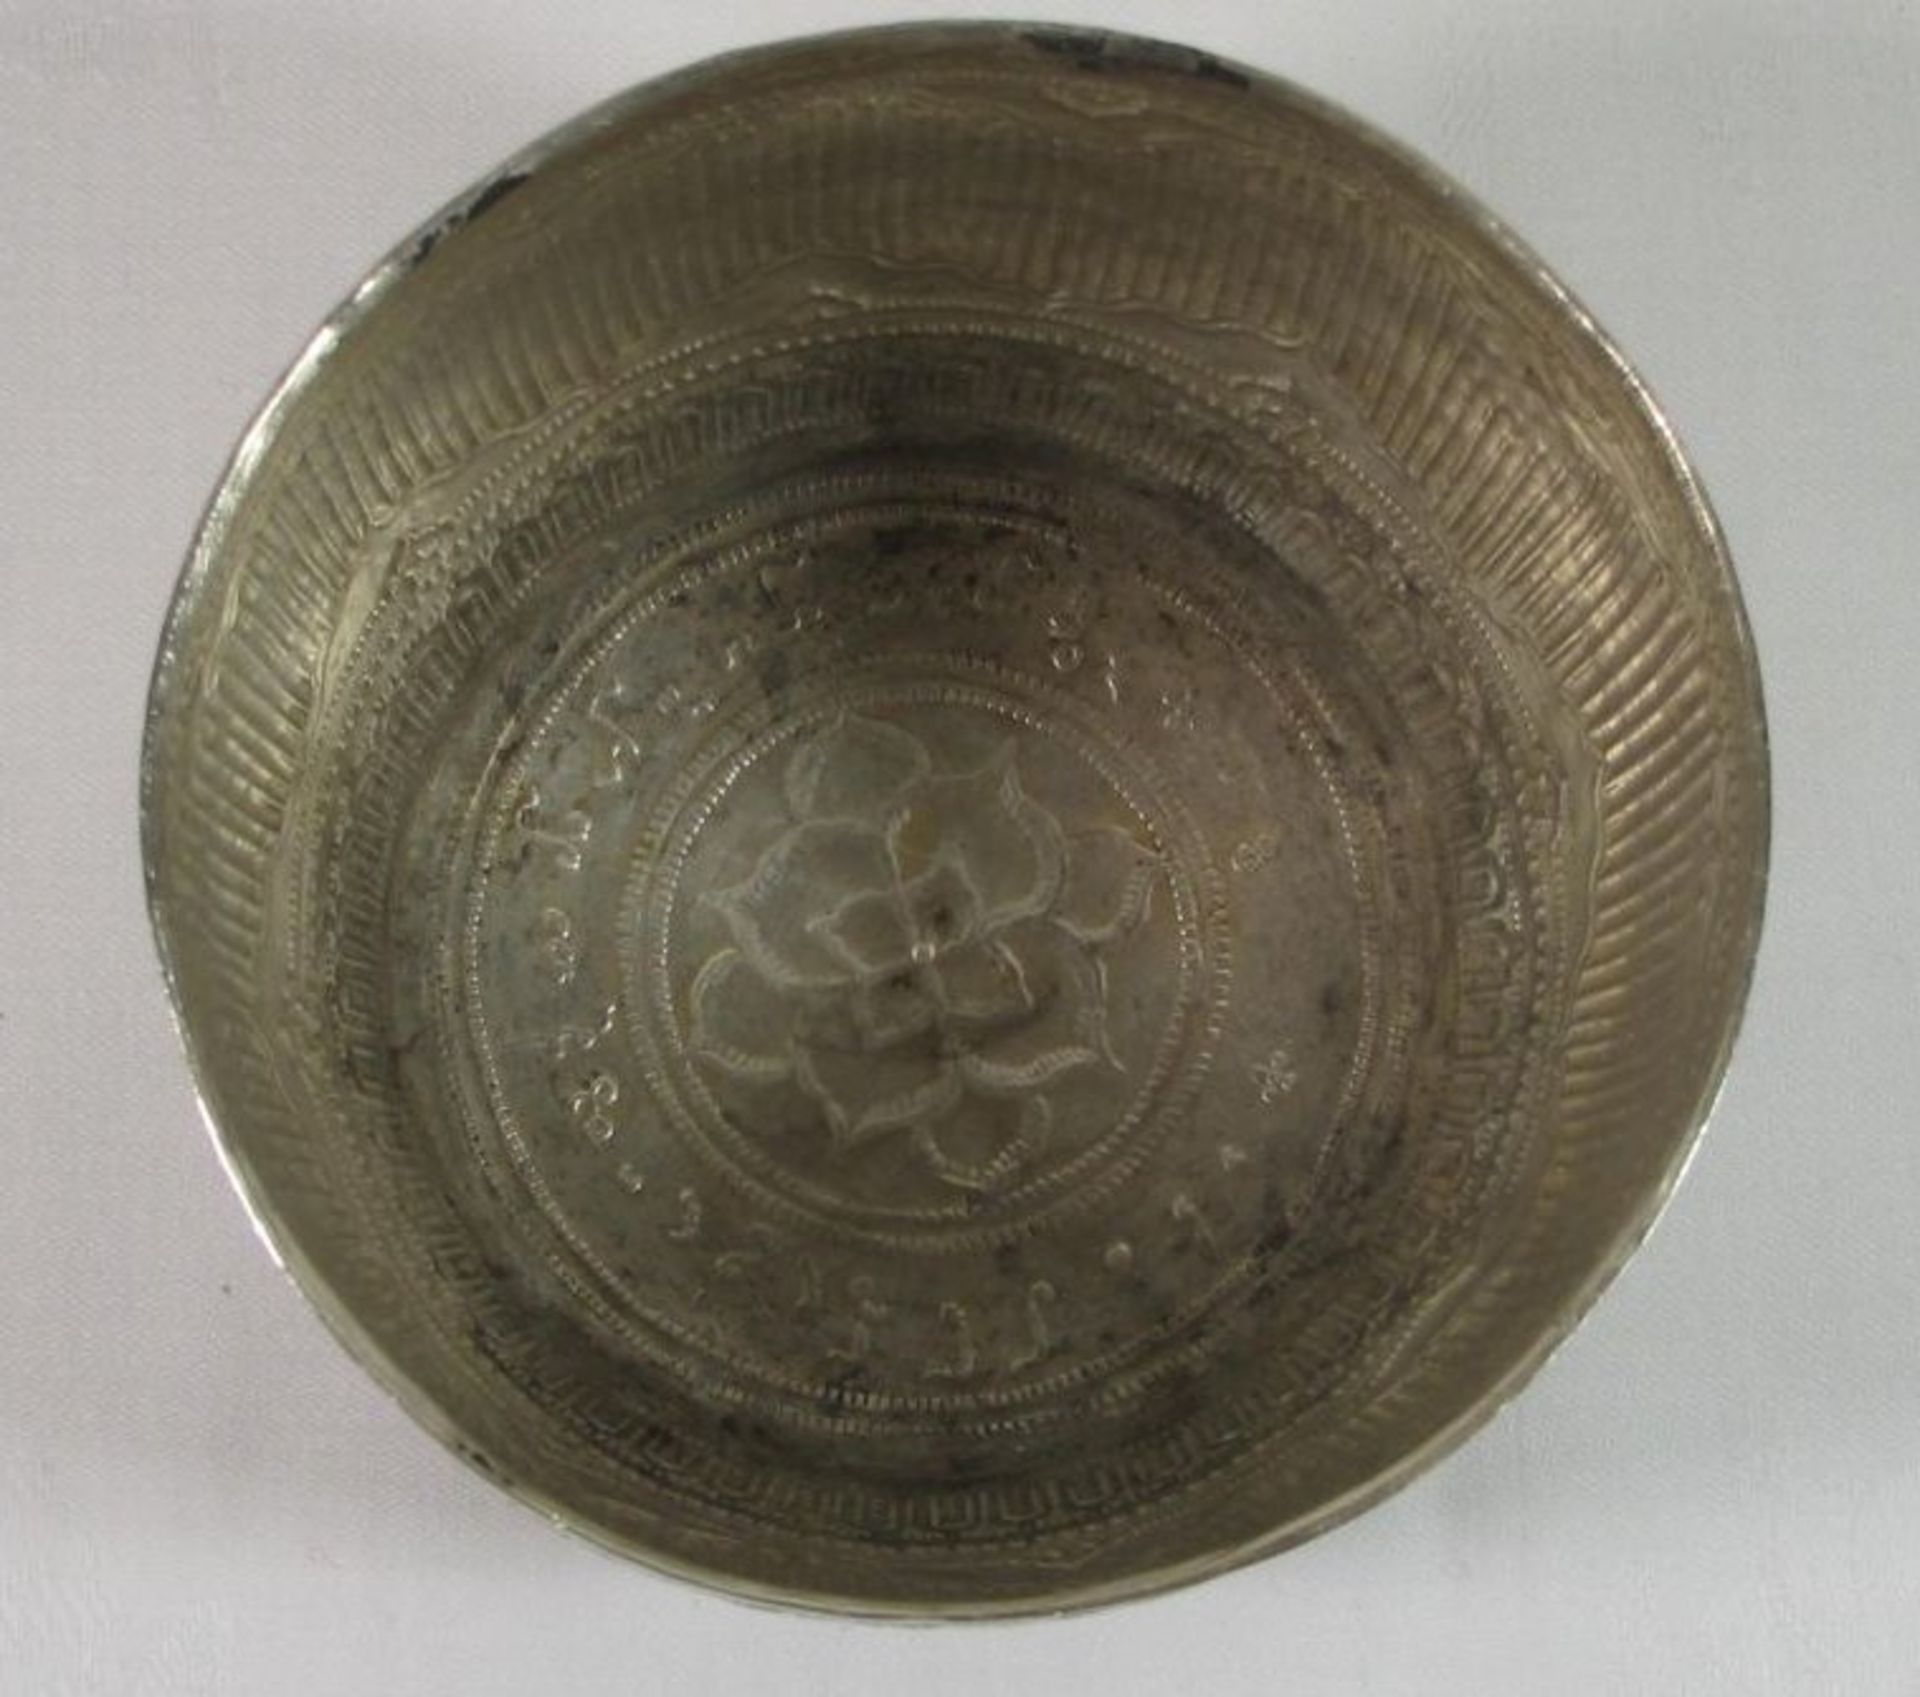 Schale, orientalisch, wohl um 1900, Silber geprüft, 164,8g, H-7,5cm D-10,5cm. - Bild 2 aus 3